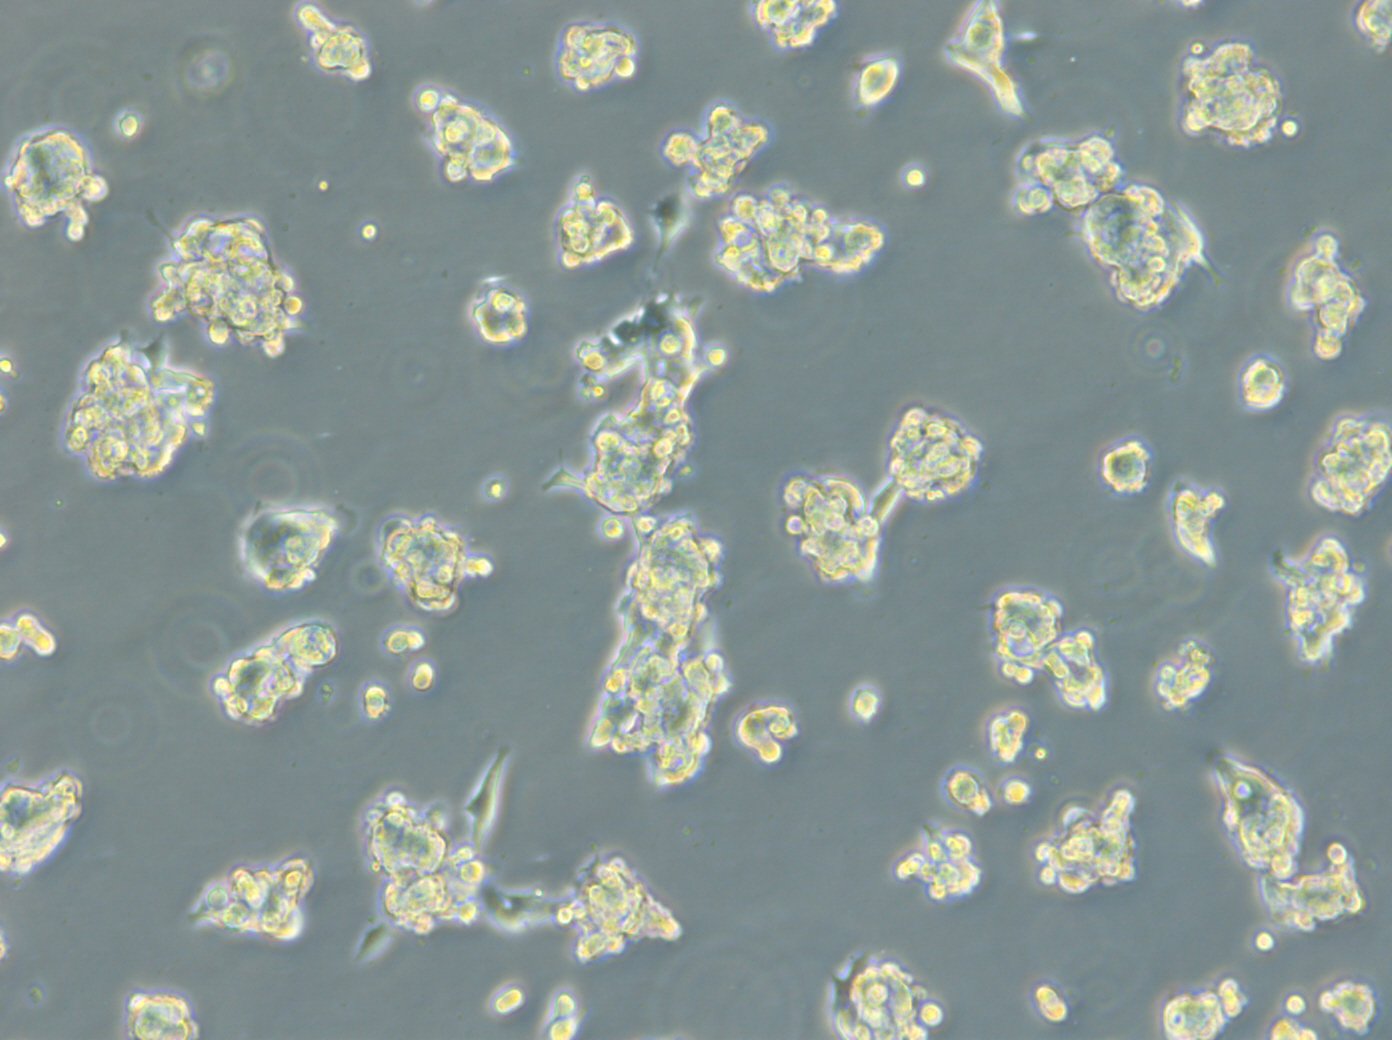 HROC131 T0 M3 Cells